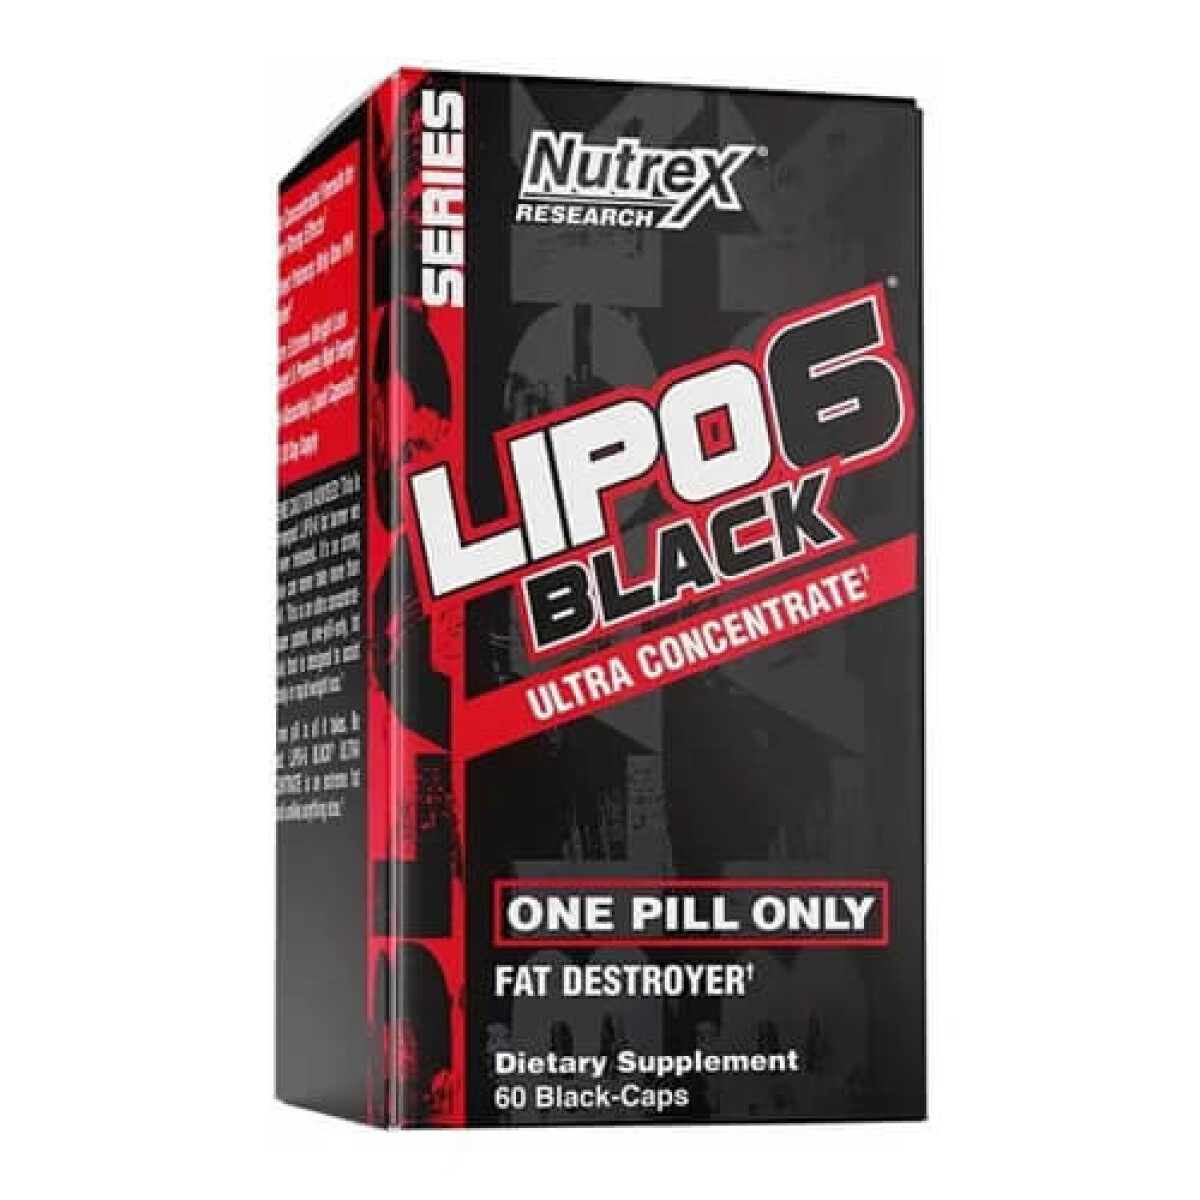 Lipo 6 Black Ultra Contrate 